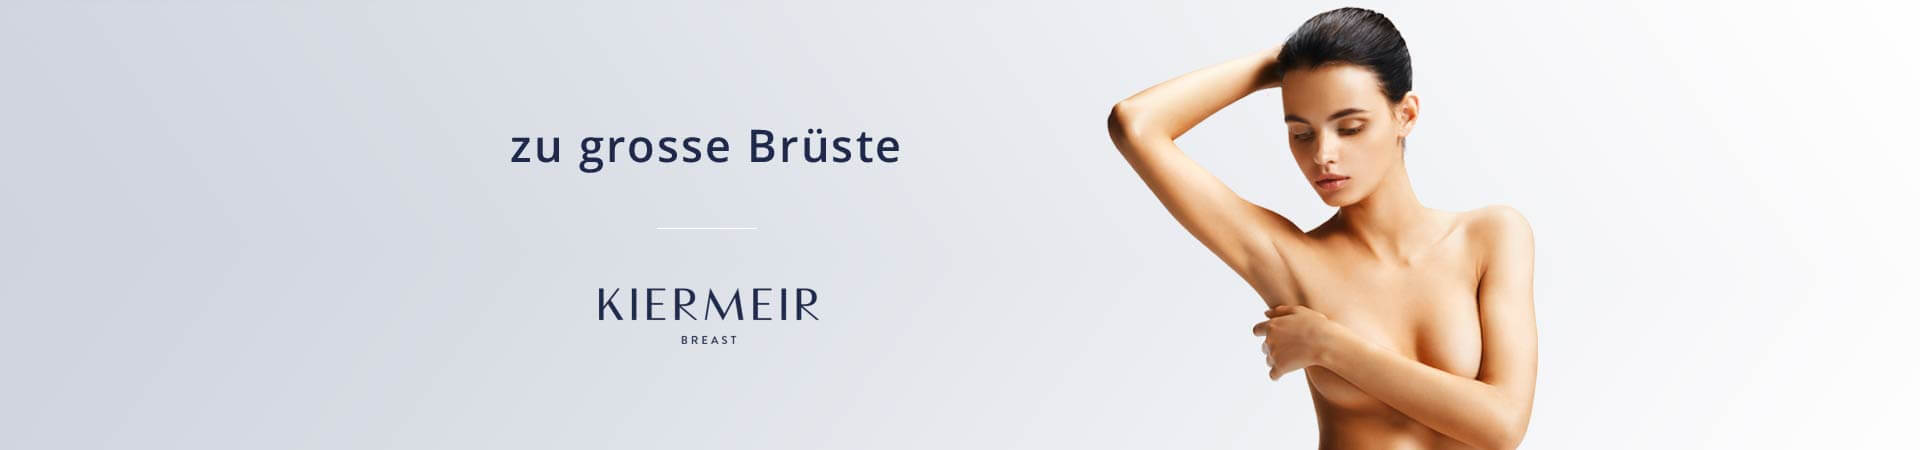 Grosse Brüste, Brustverkleinerung in Bern/Schweiz - Kiermeir Breast 